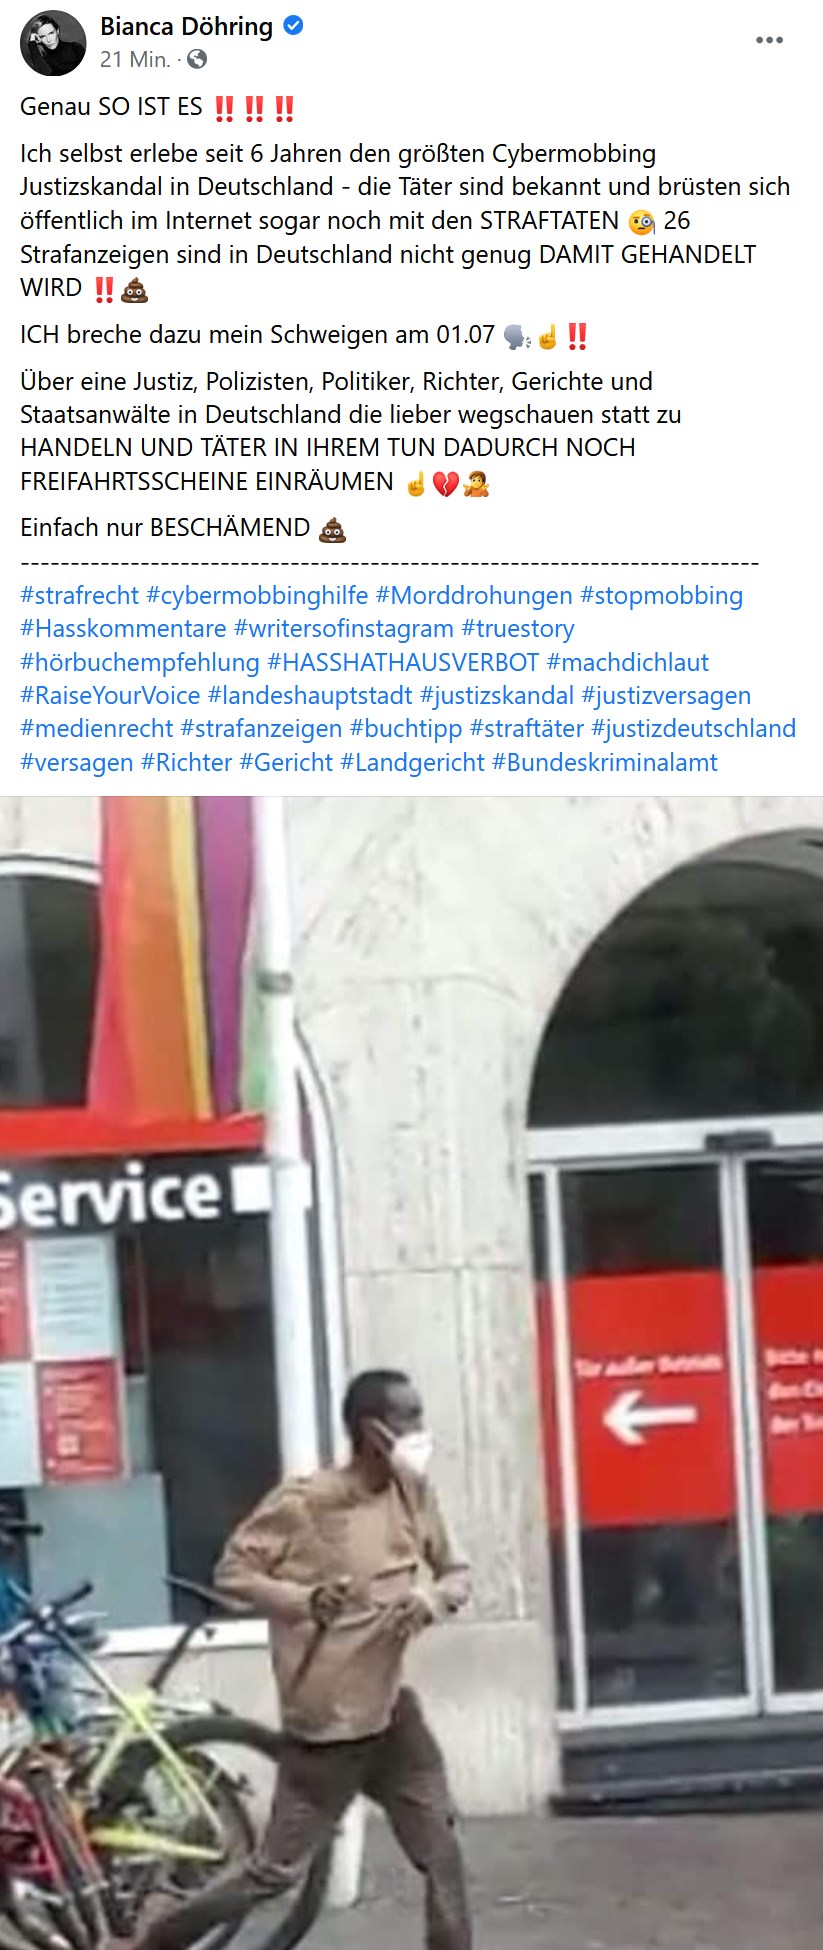 Terroranschlag Würzburg Bianca Döhring zeigt Messermann Täter für ihr Cybermobbing